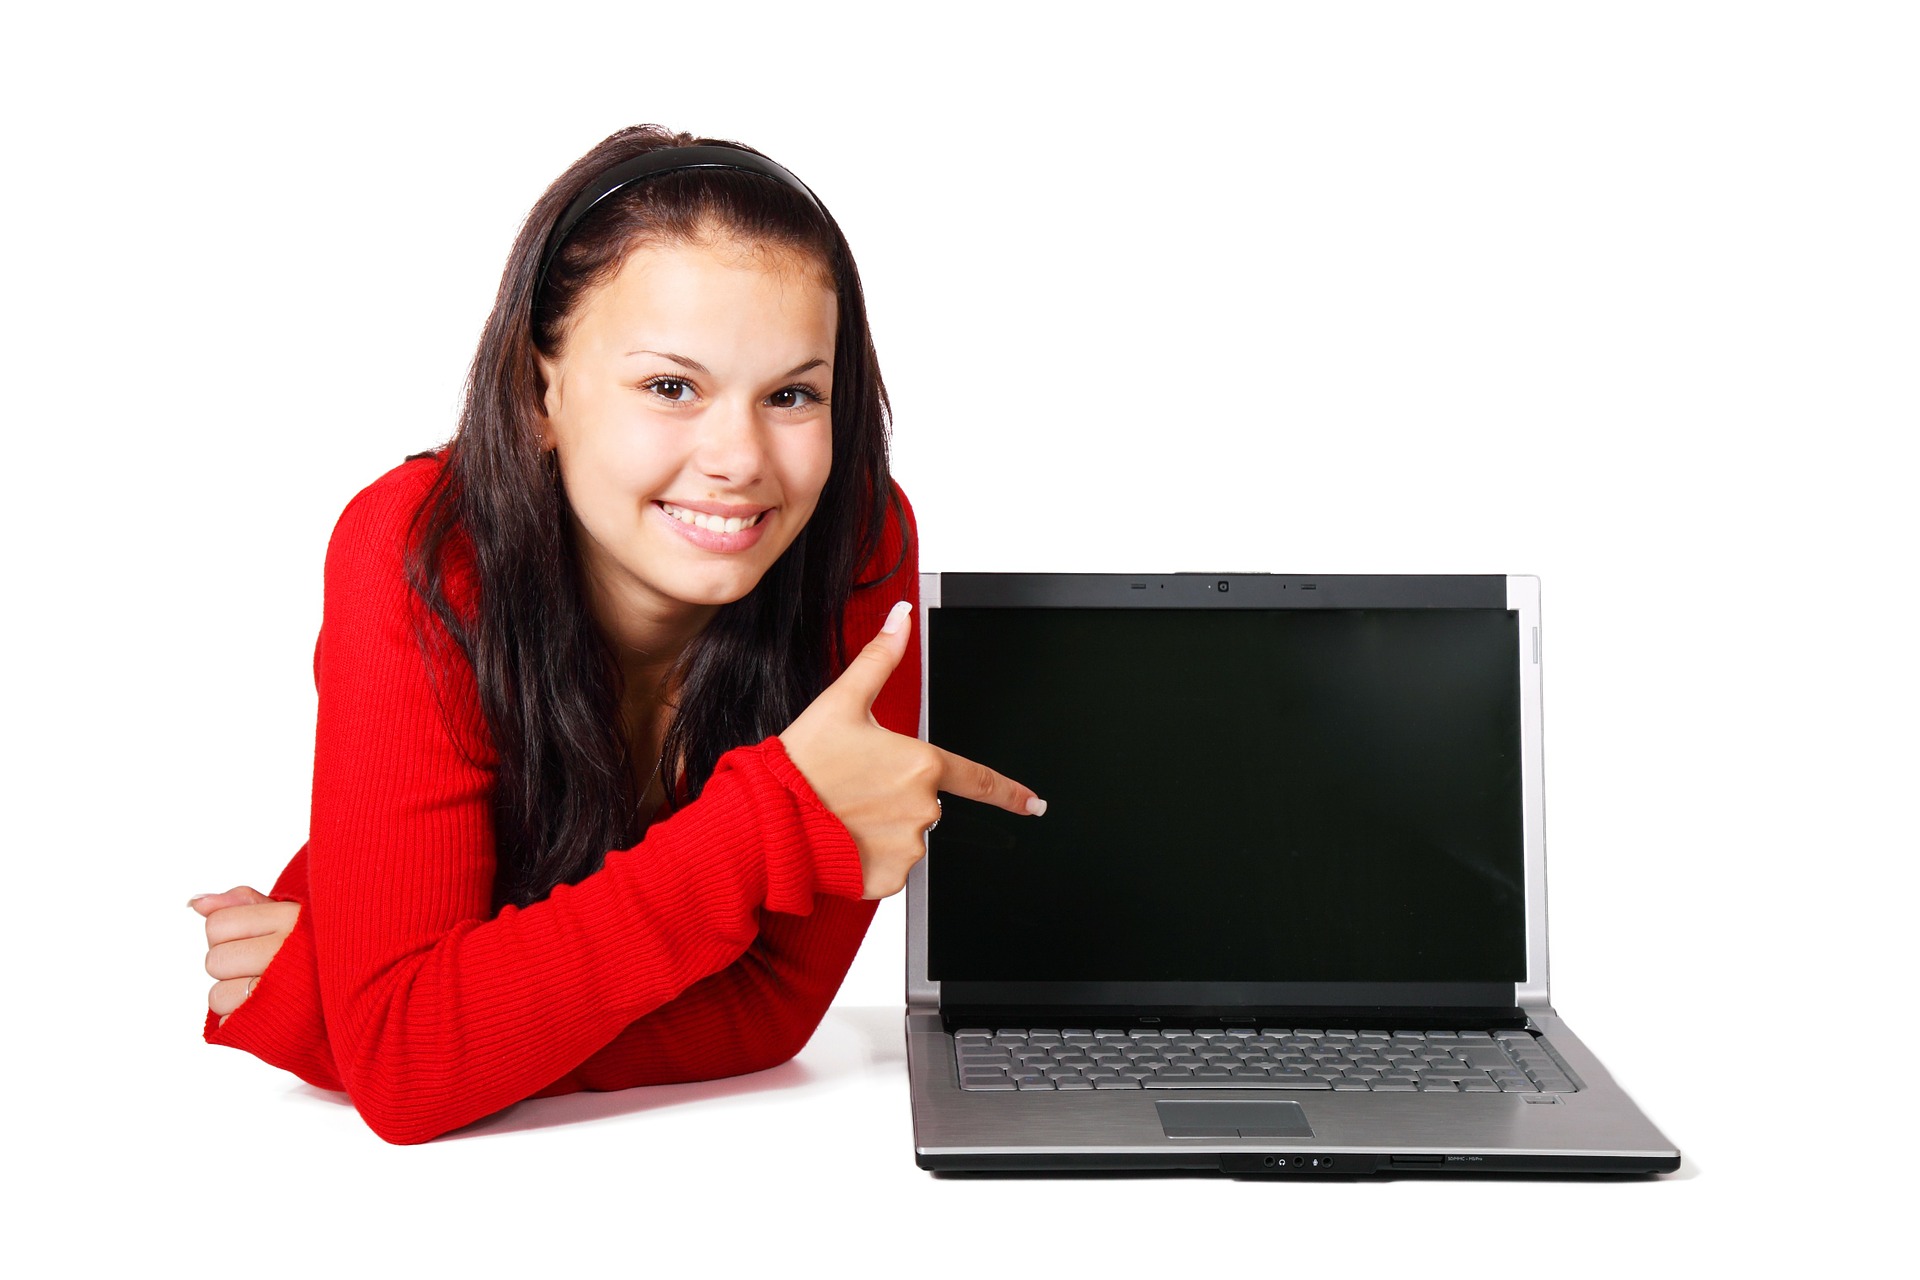 Nuori nainen hymyilee kannettavan tietokoneen vieressä.